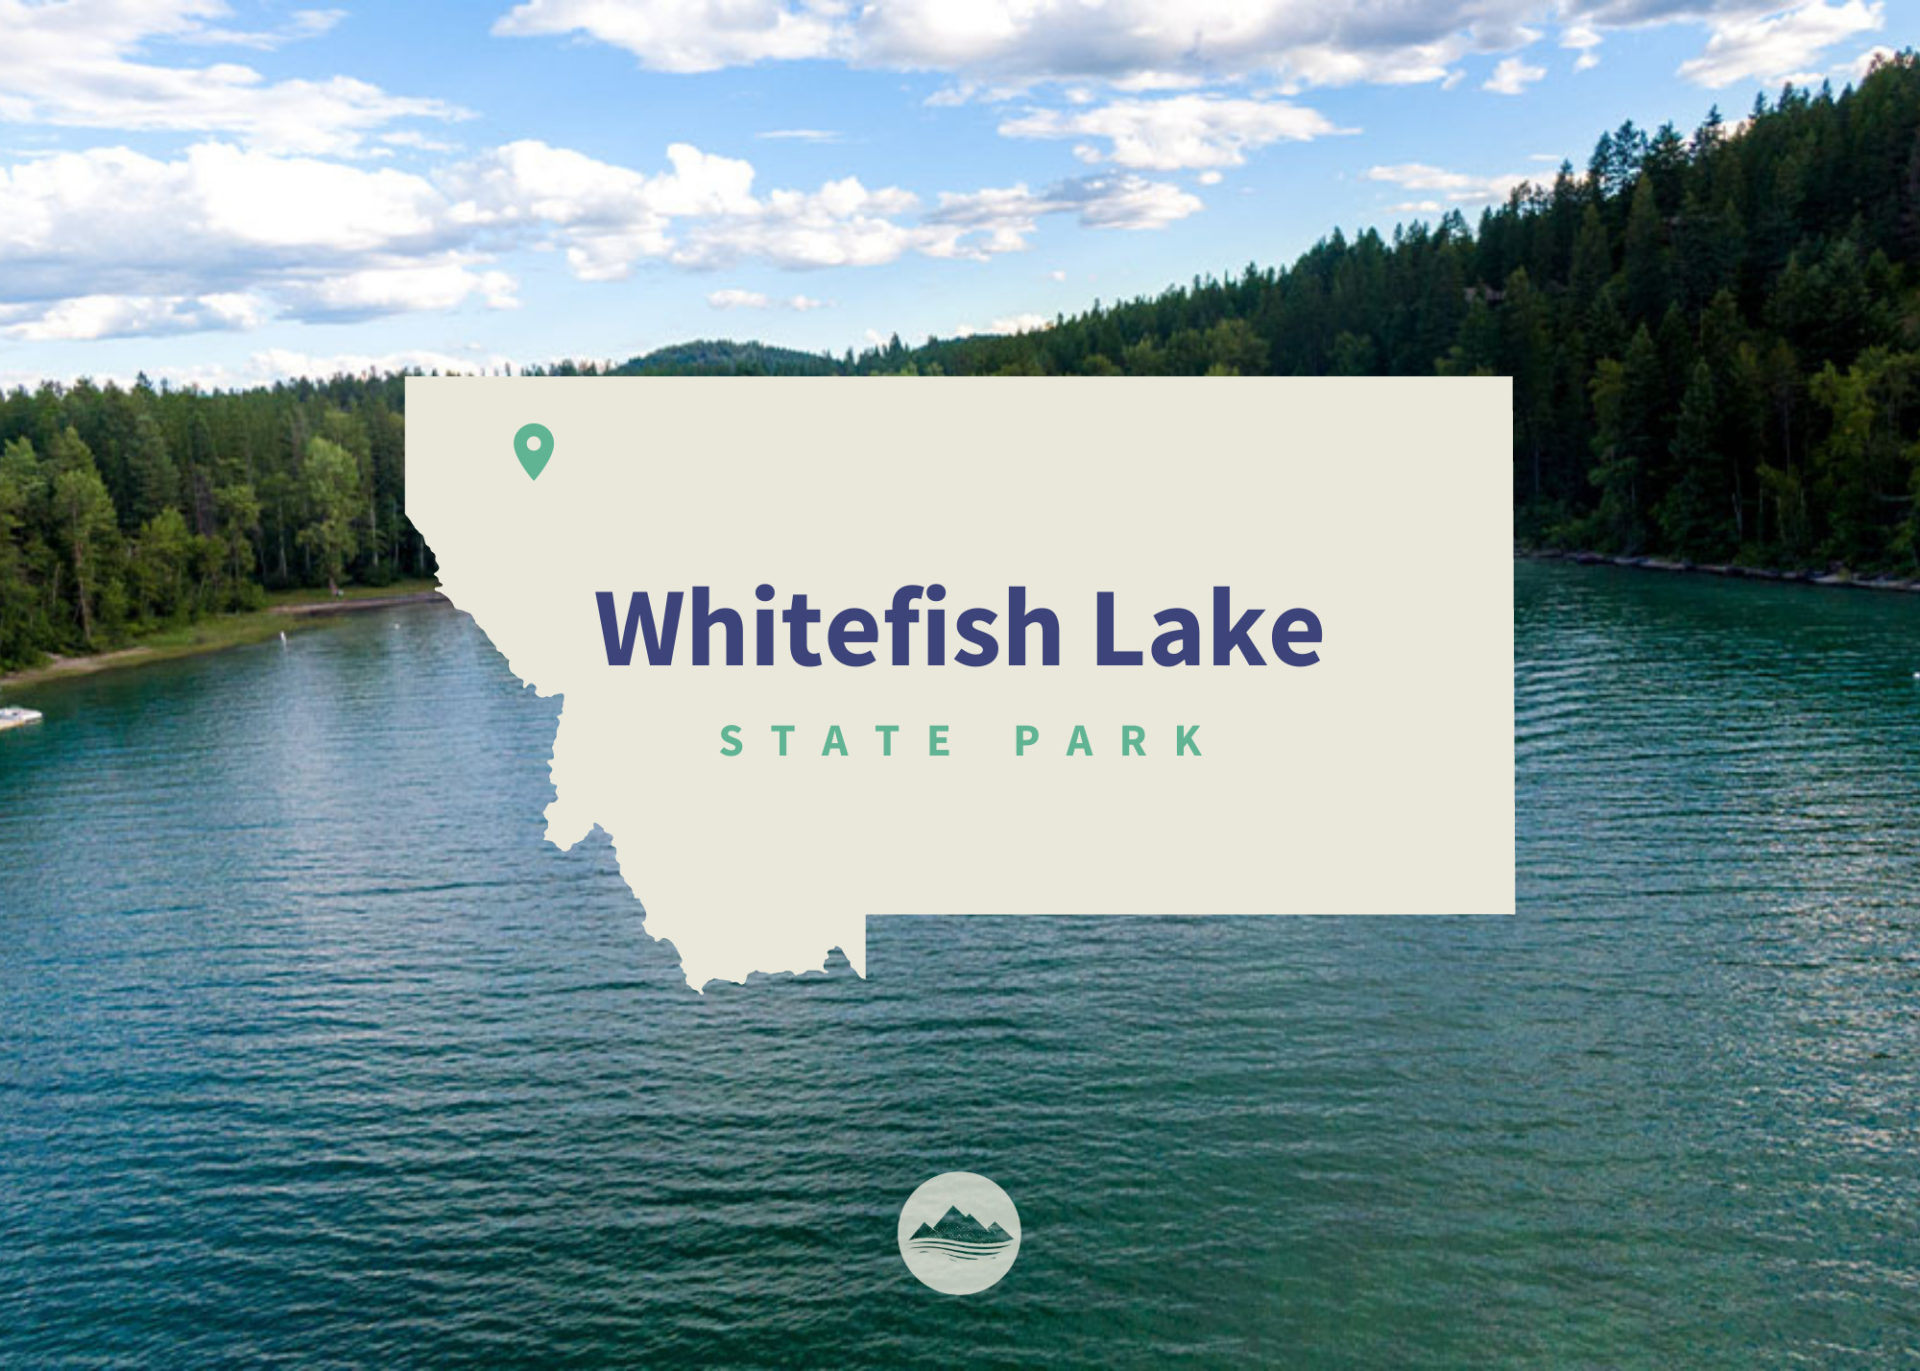 Whitefish Lake State Park